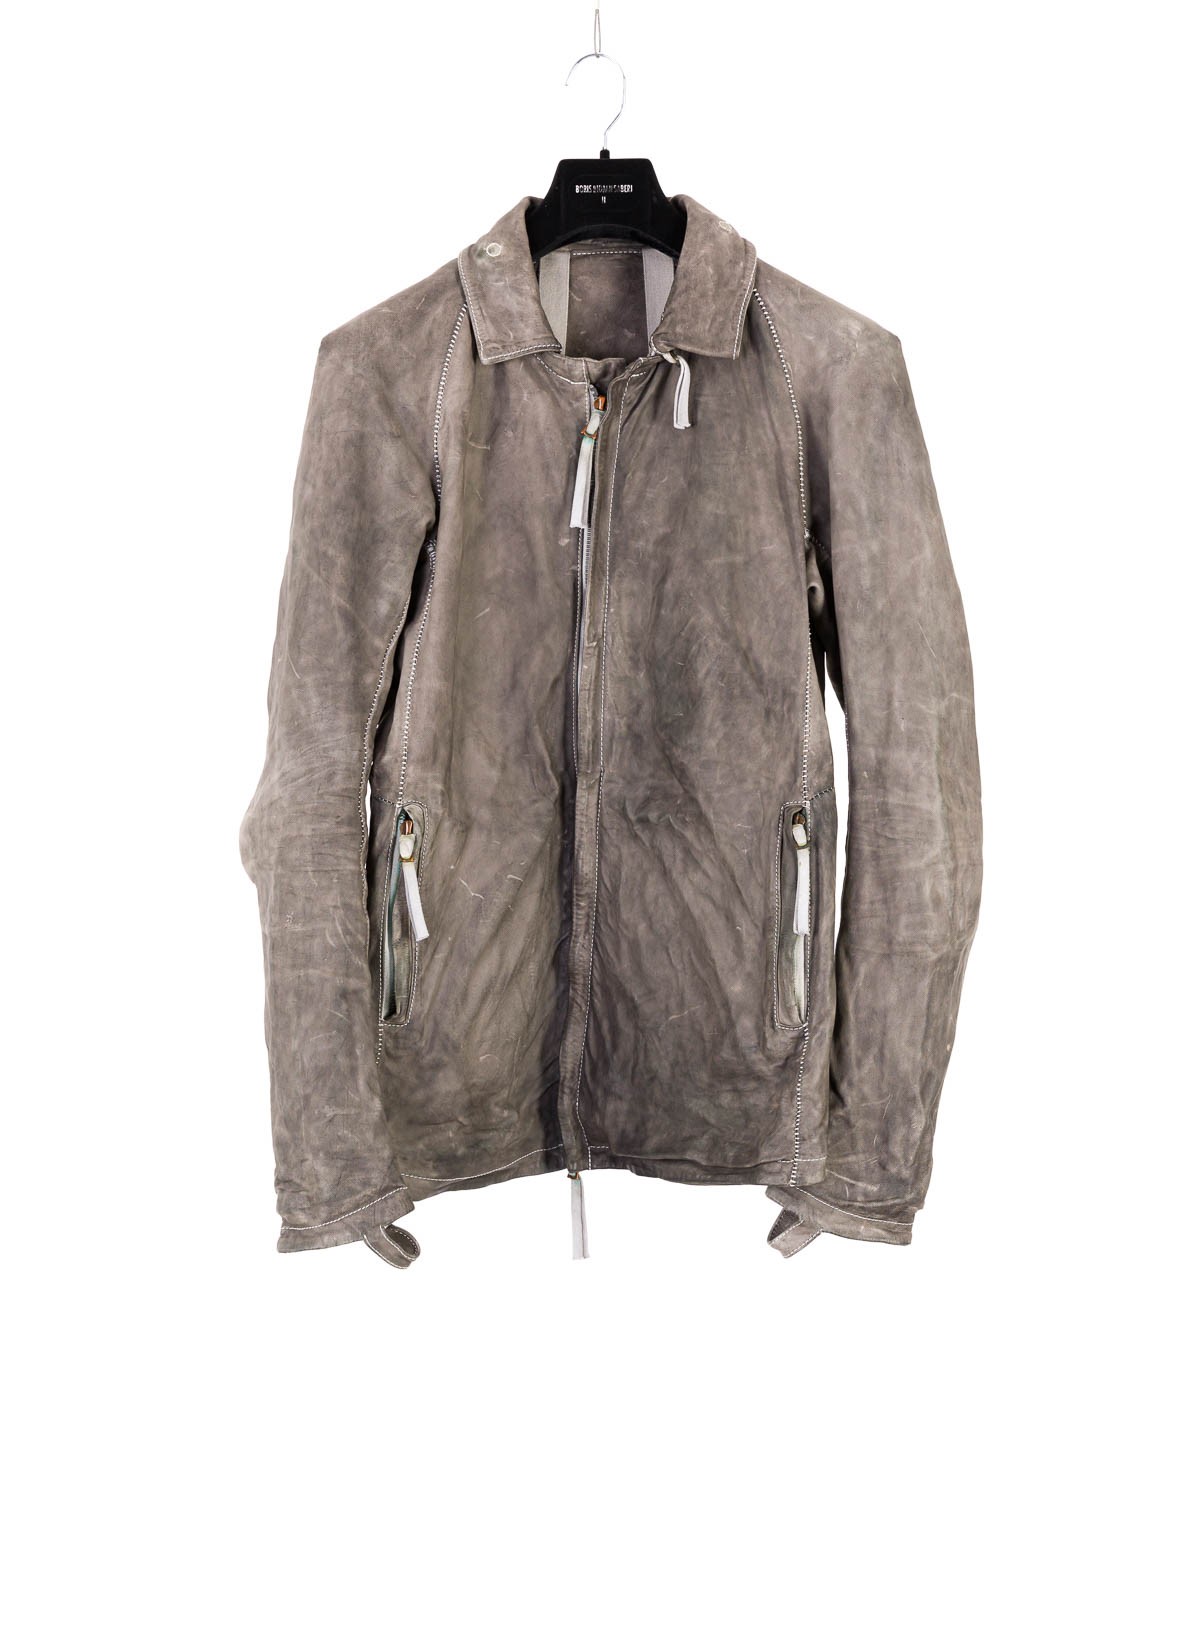 hide-m | BORIS BIDJAN SABERI Jacket J2, grey kangaroo leather